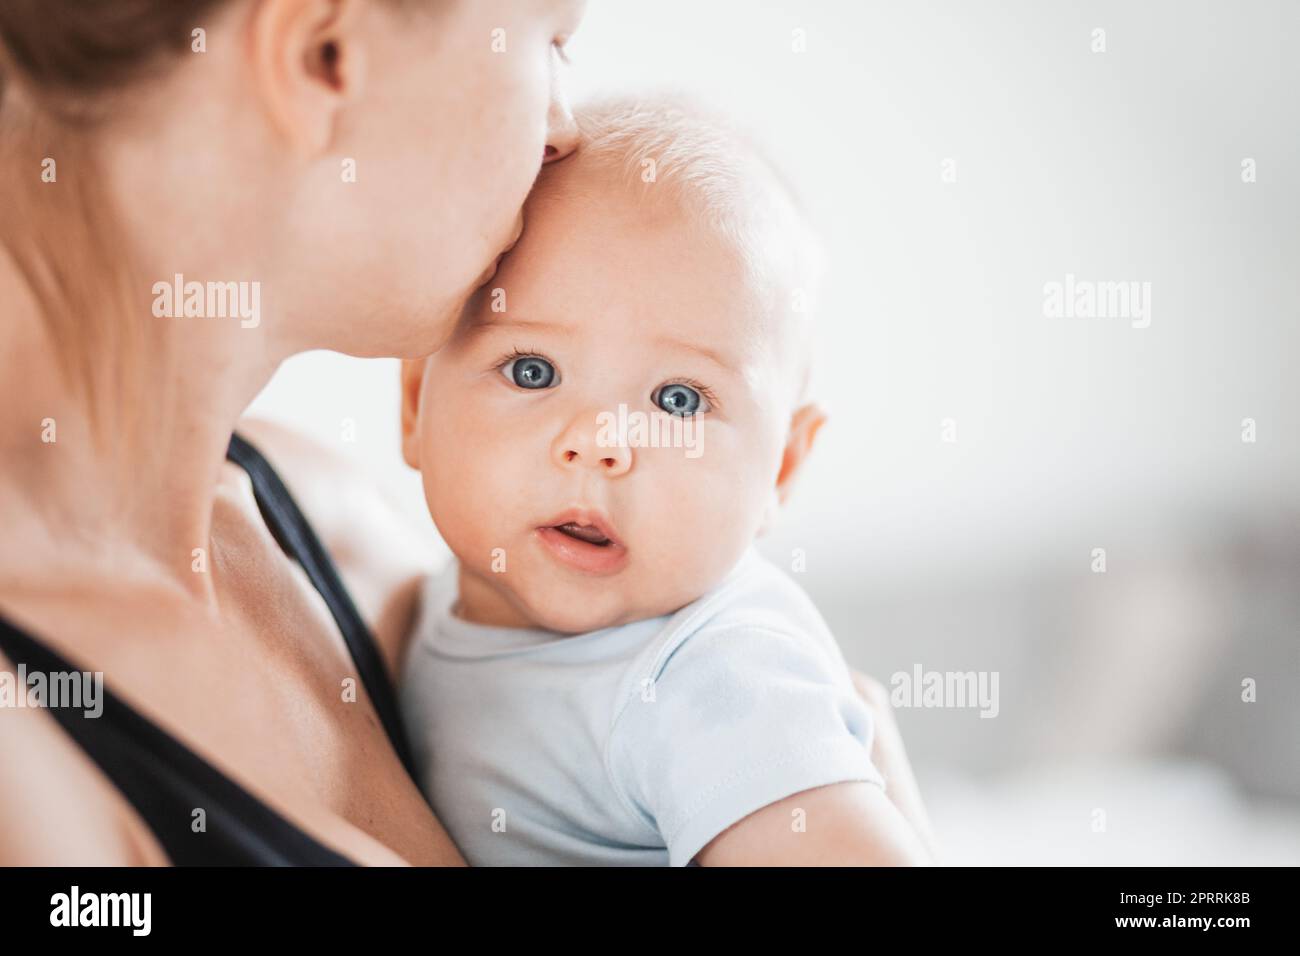 Portrait de bébé doux reposant dans les bras des mères, regardant l'appareil photo. Nouvelle maman tenant et embrassant petit enfant, embrassant l'enfant avec tendresse, amour, soin. Concept de maternité Banque D'Images